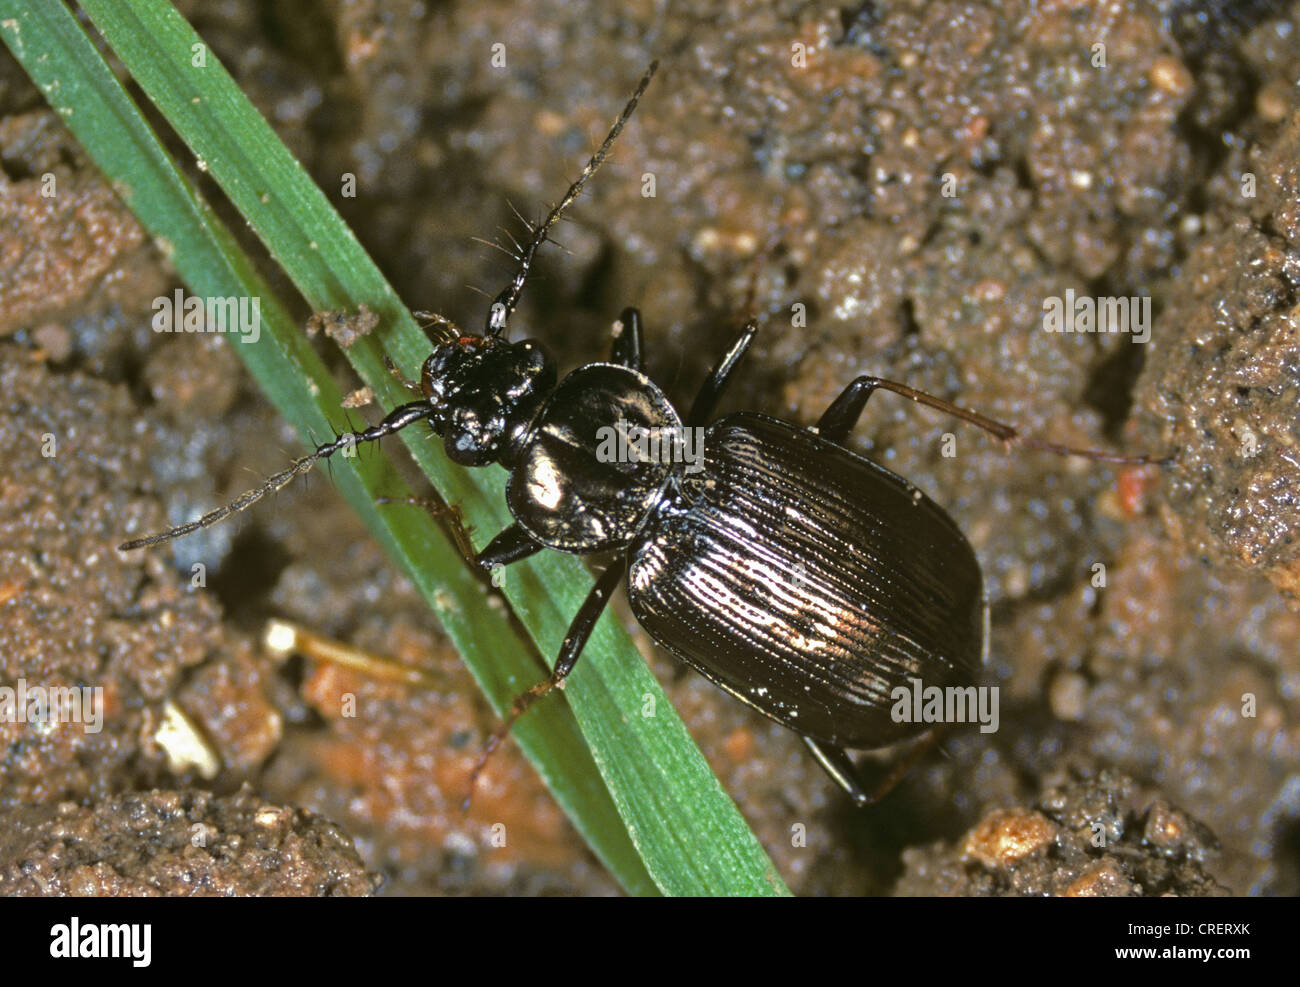 Predatory ground beetle (Loricera pilicornis) adult Stock Photo